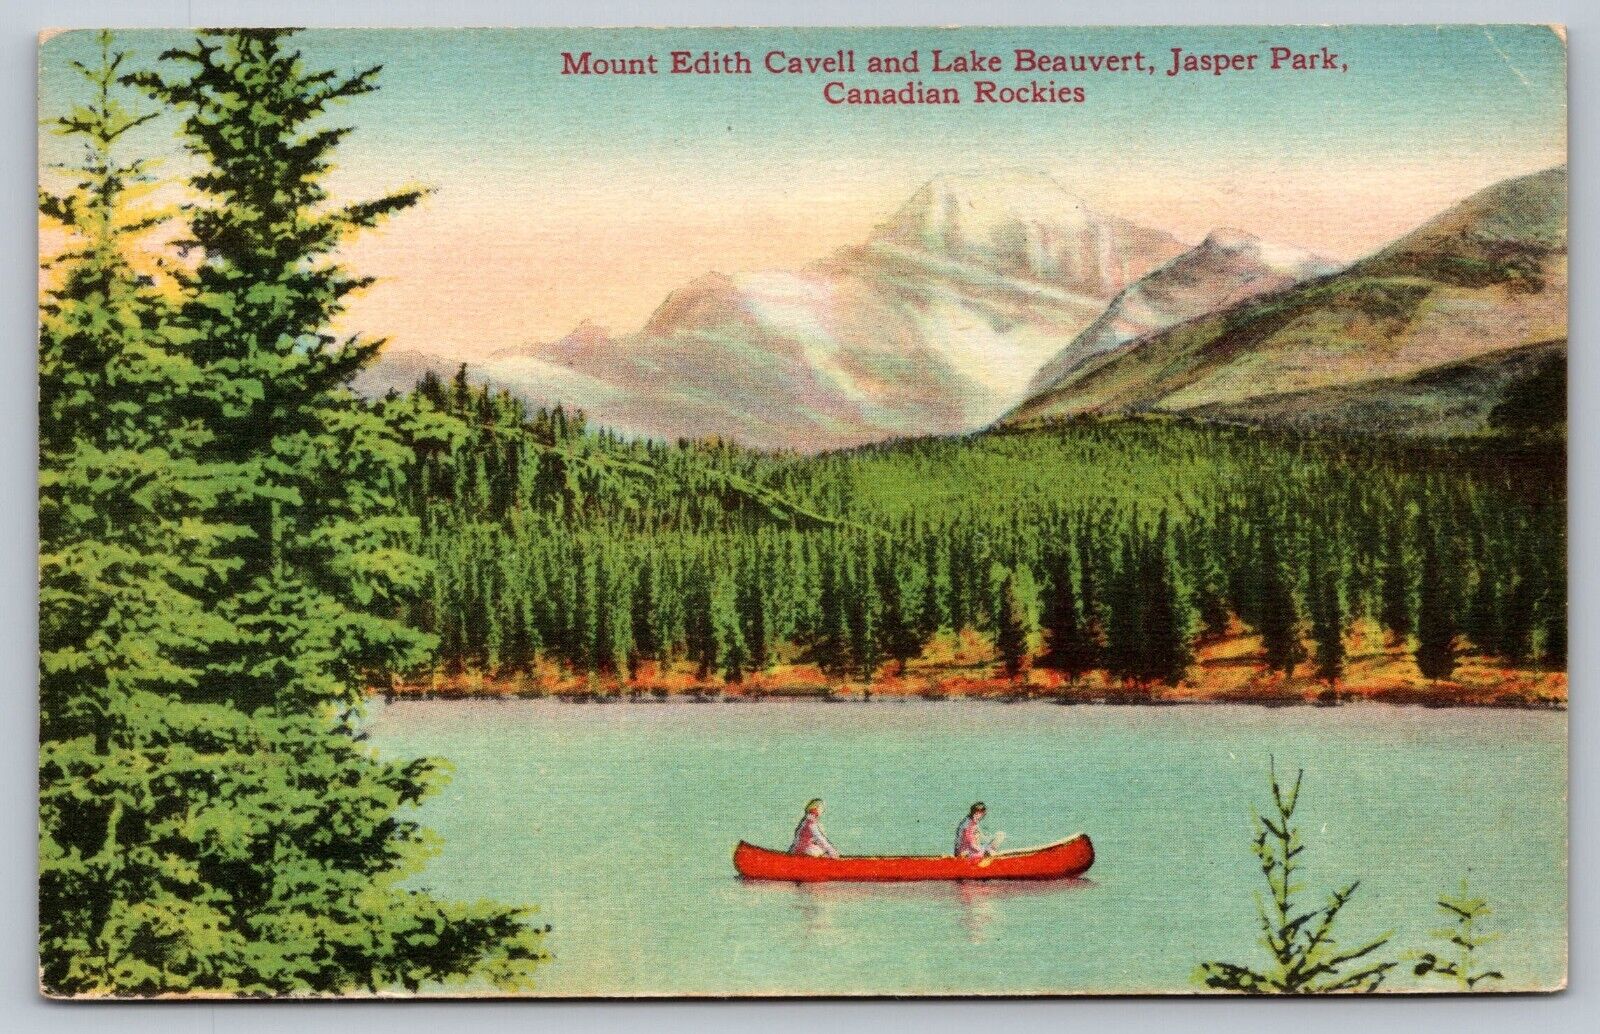 Jasper Alberta Canada - Lake Beauvert - Mount Edith - Canoe - Canadian Rockies